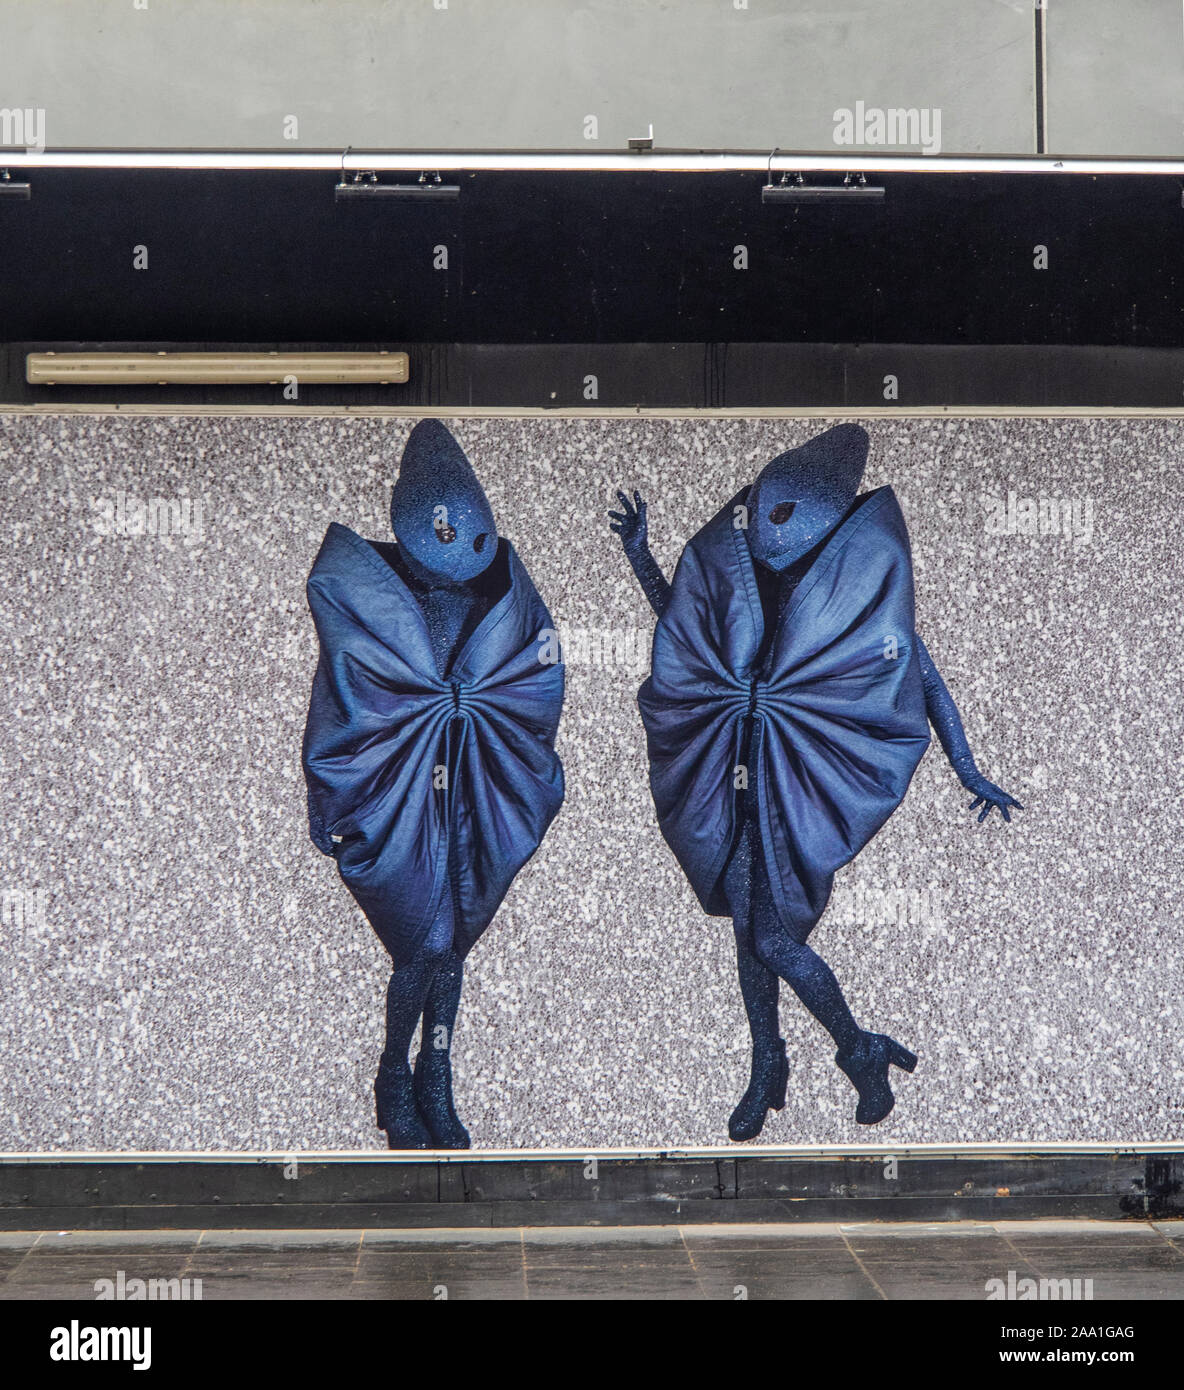 Street art mural of two alien like figures Stock Photo